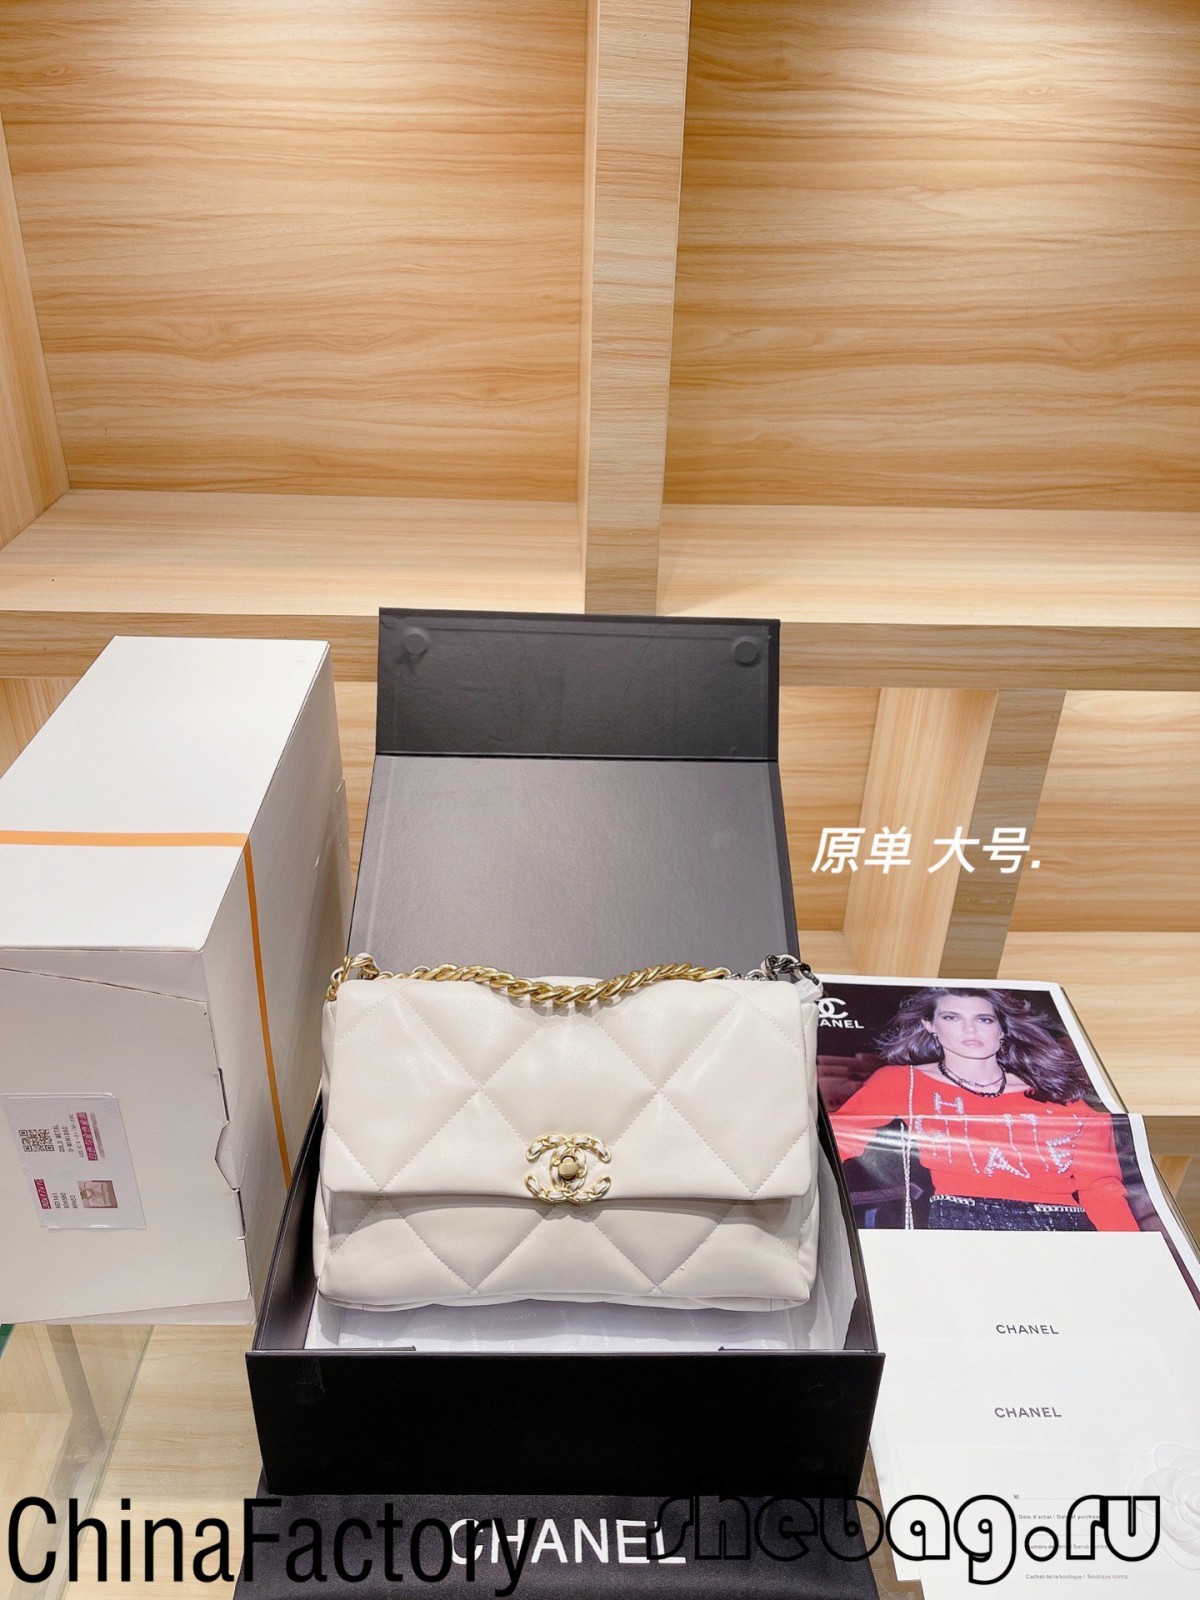 Aaa Túi Chanel bản sao: Đánh giá túi Chanel 19 bản sao (Cập nhật vào năm 2022) - Chất lượng tốt nhất Túi Louis Vuitton giả trên Cửa hàng trực tuyến, Túi thiết kế bản sao ru